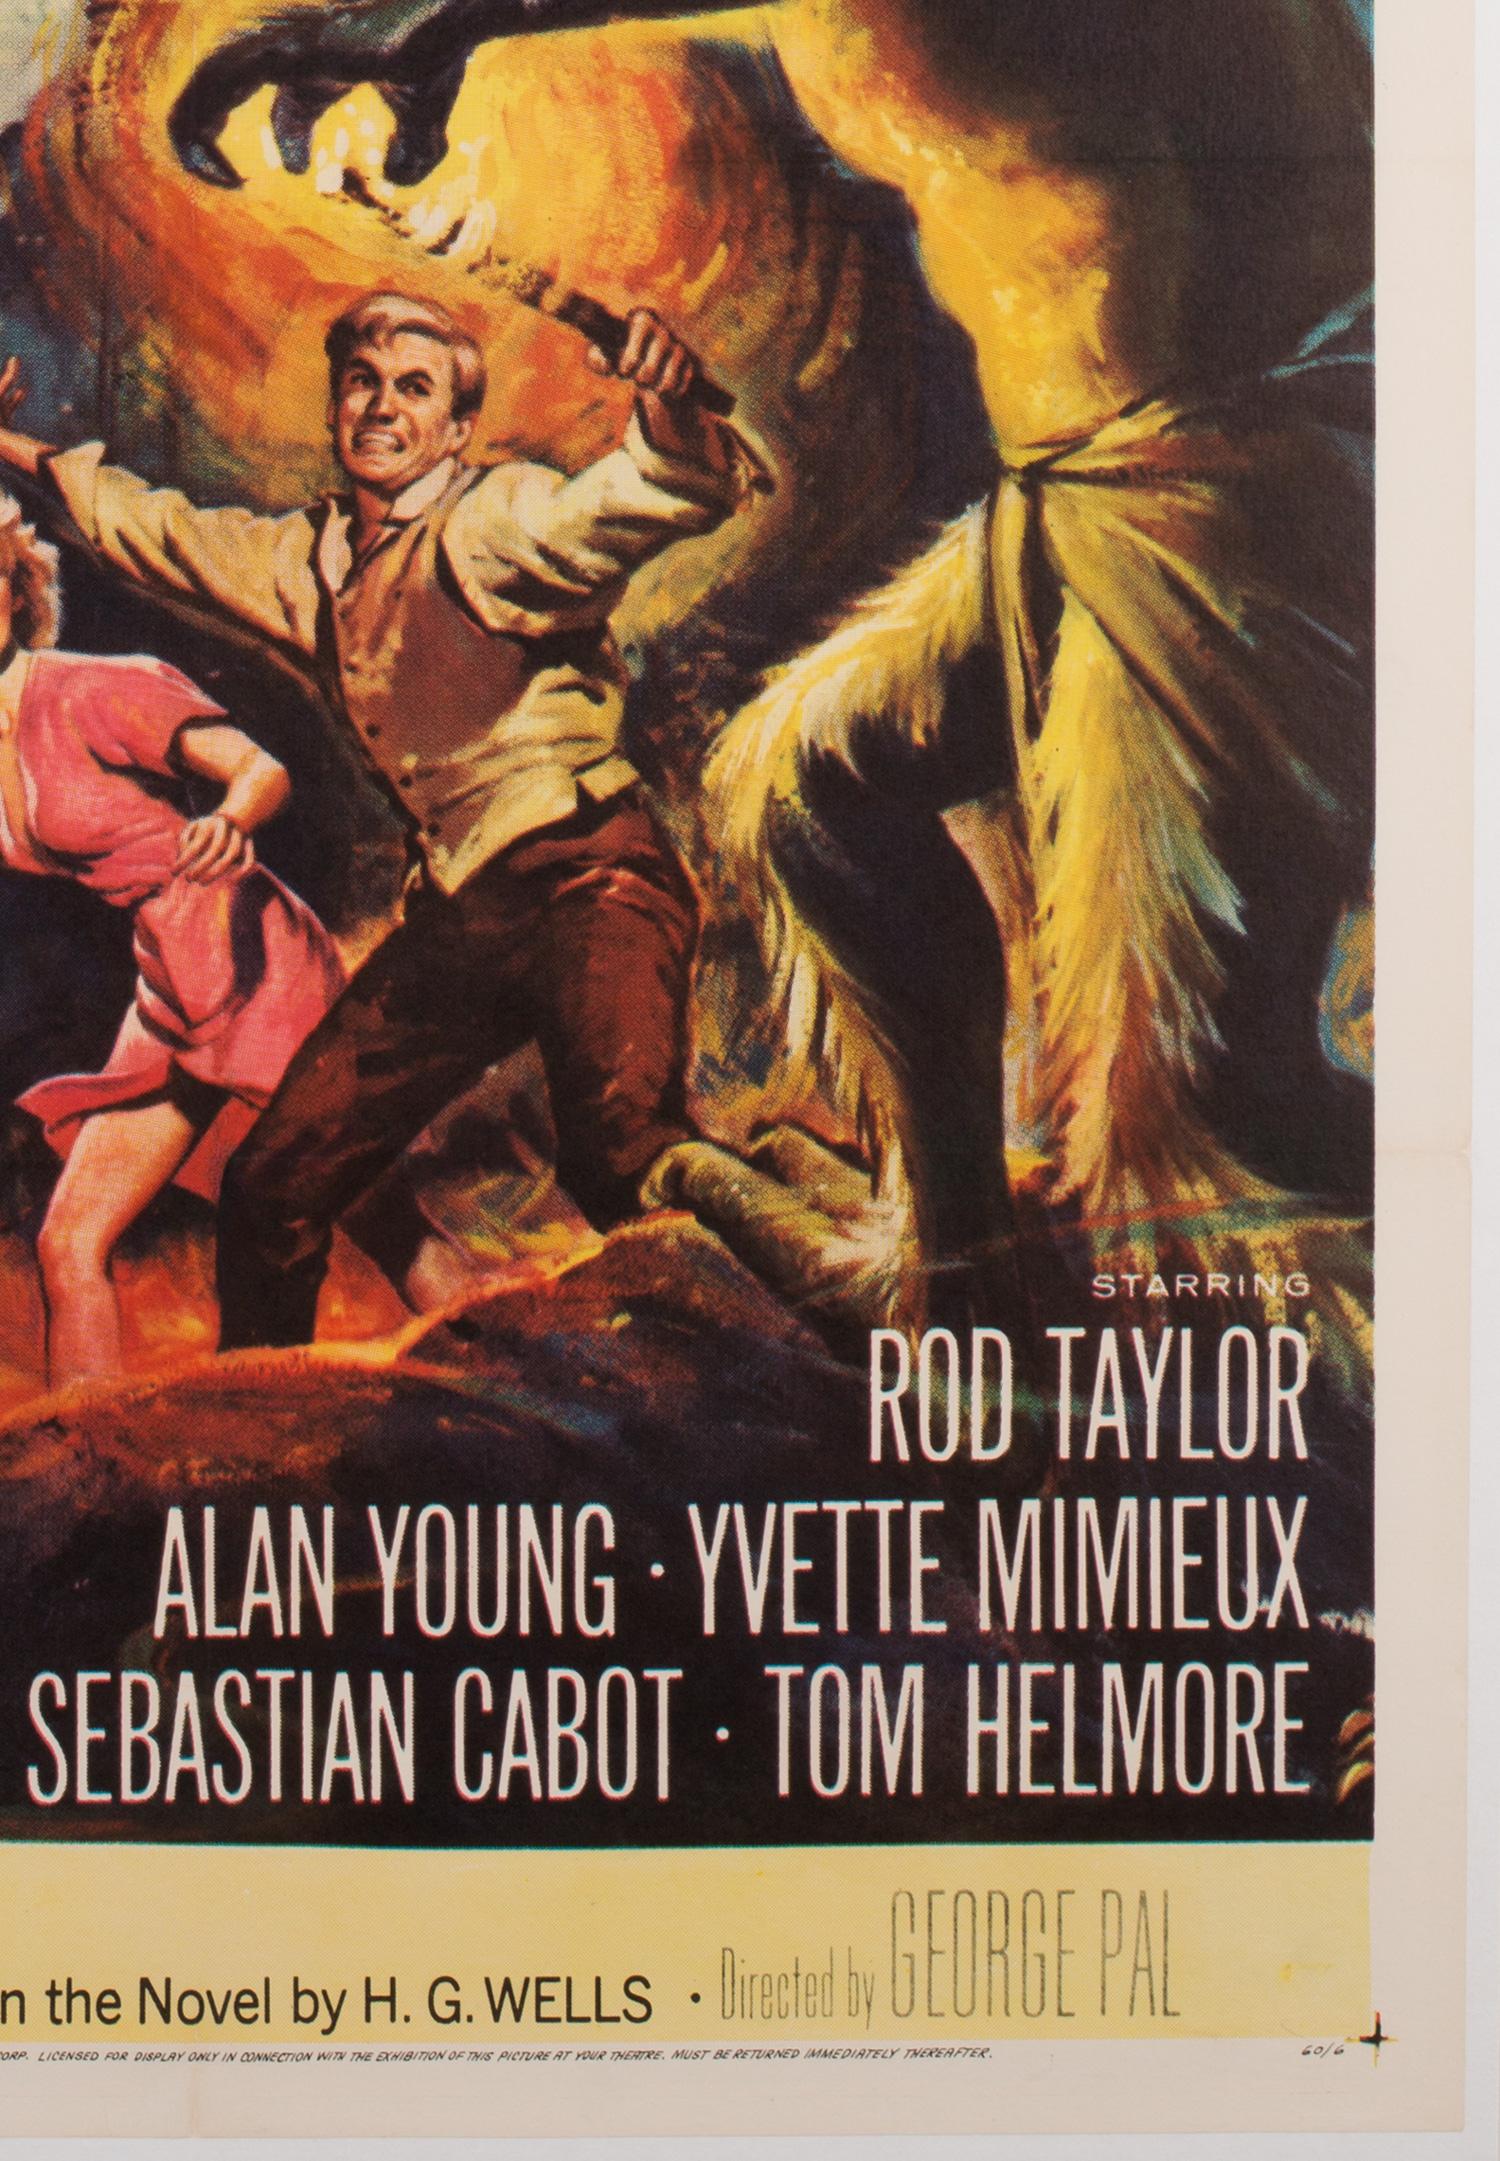 Wunderschönes Filmplakat für den Science-Fiction-Klassiker The Time Machine aus den 1960er Jahren. Fabelhaftes Kunstwerk von Reynold Brown.

Es wäre schwierig, einen anderen in besserem Zustand zu finden... selbst wenn man eine Zeitmaschine